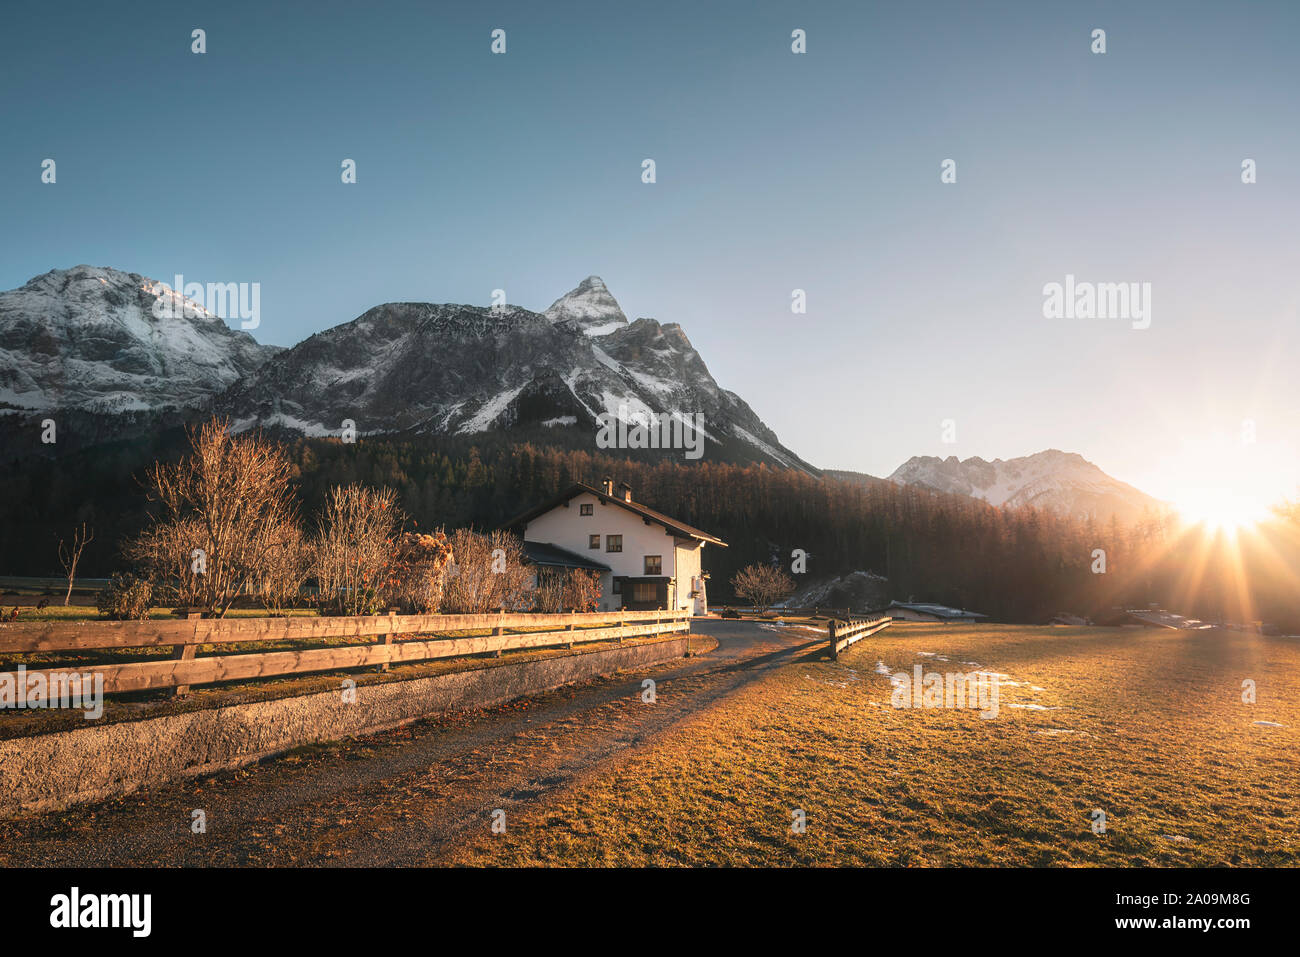 Schneebedeckten Alpen berge Gipfel und Österreichischen Bauernhof im Abendlicht, an einem sonnigen Tag des Winters, in Ehrwald, Österreich. Dezember Sonnenuntergang Landschaft. Stockfoto